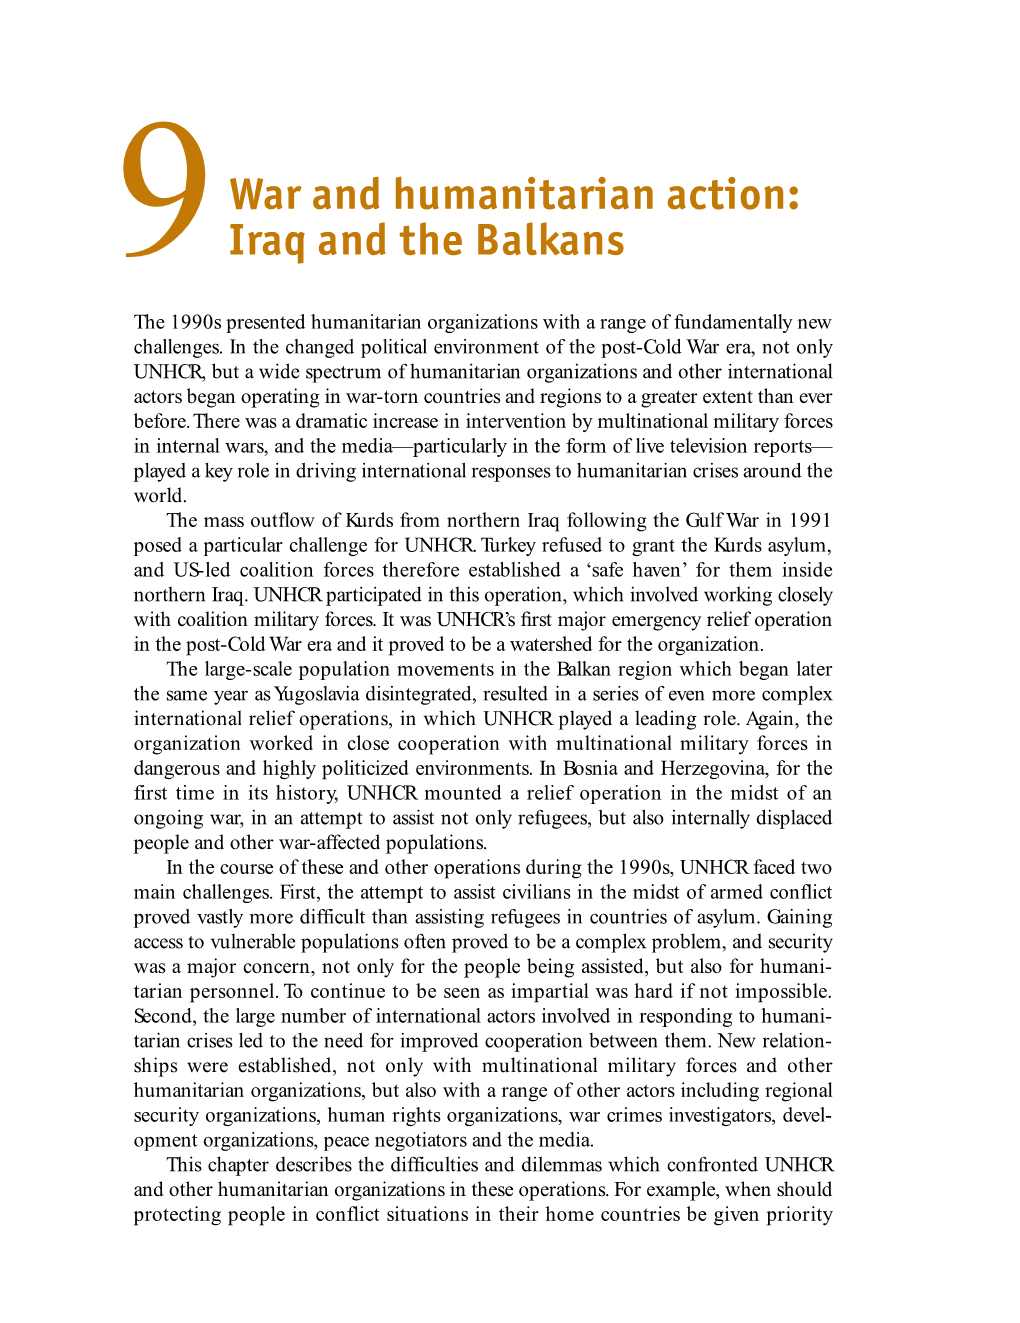 War and Humanitarian Action: Iraq and the Balkans